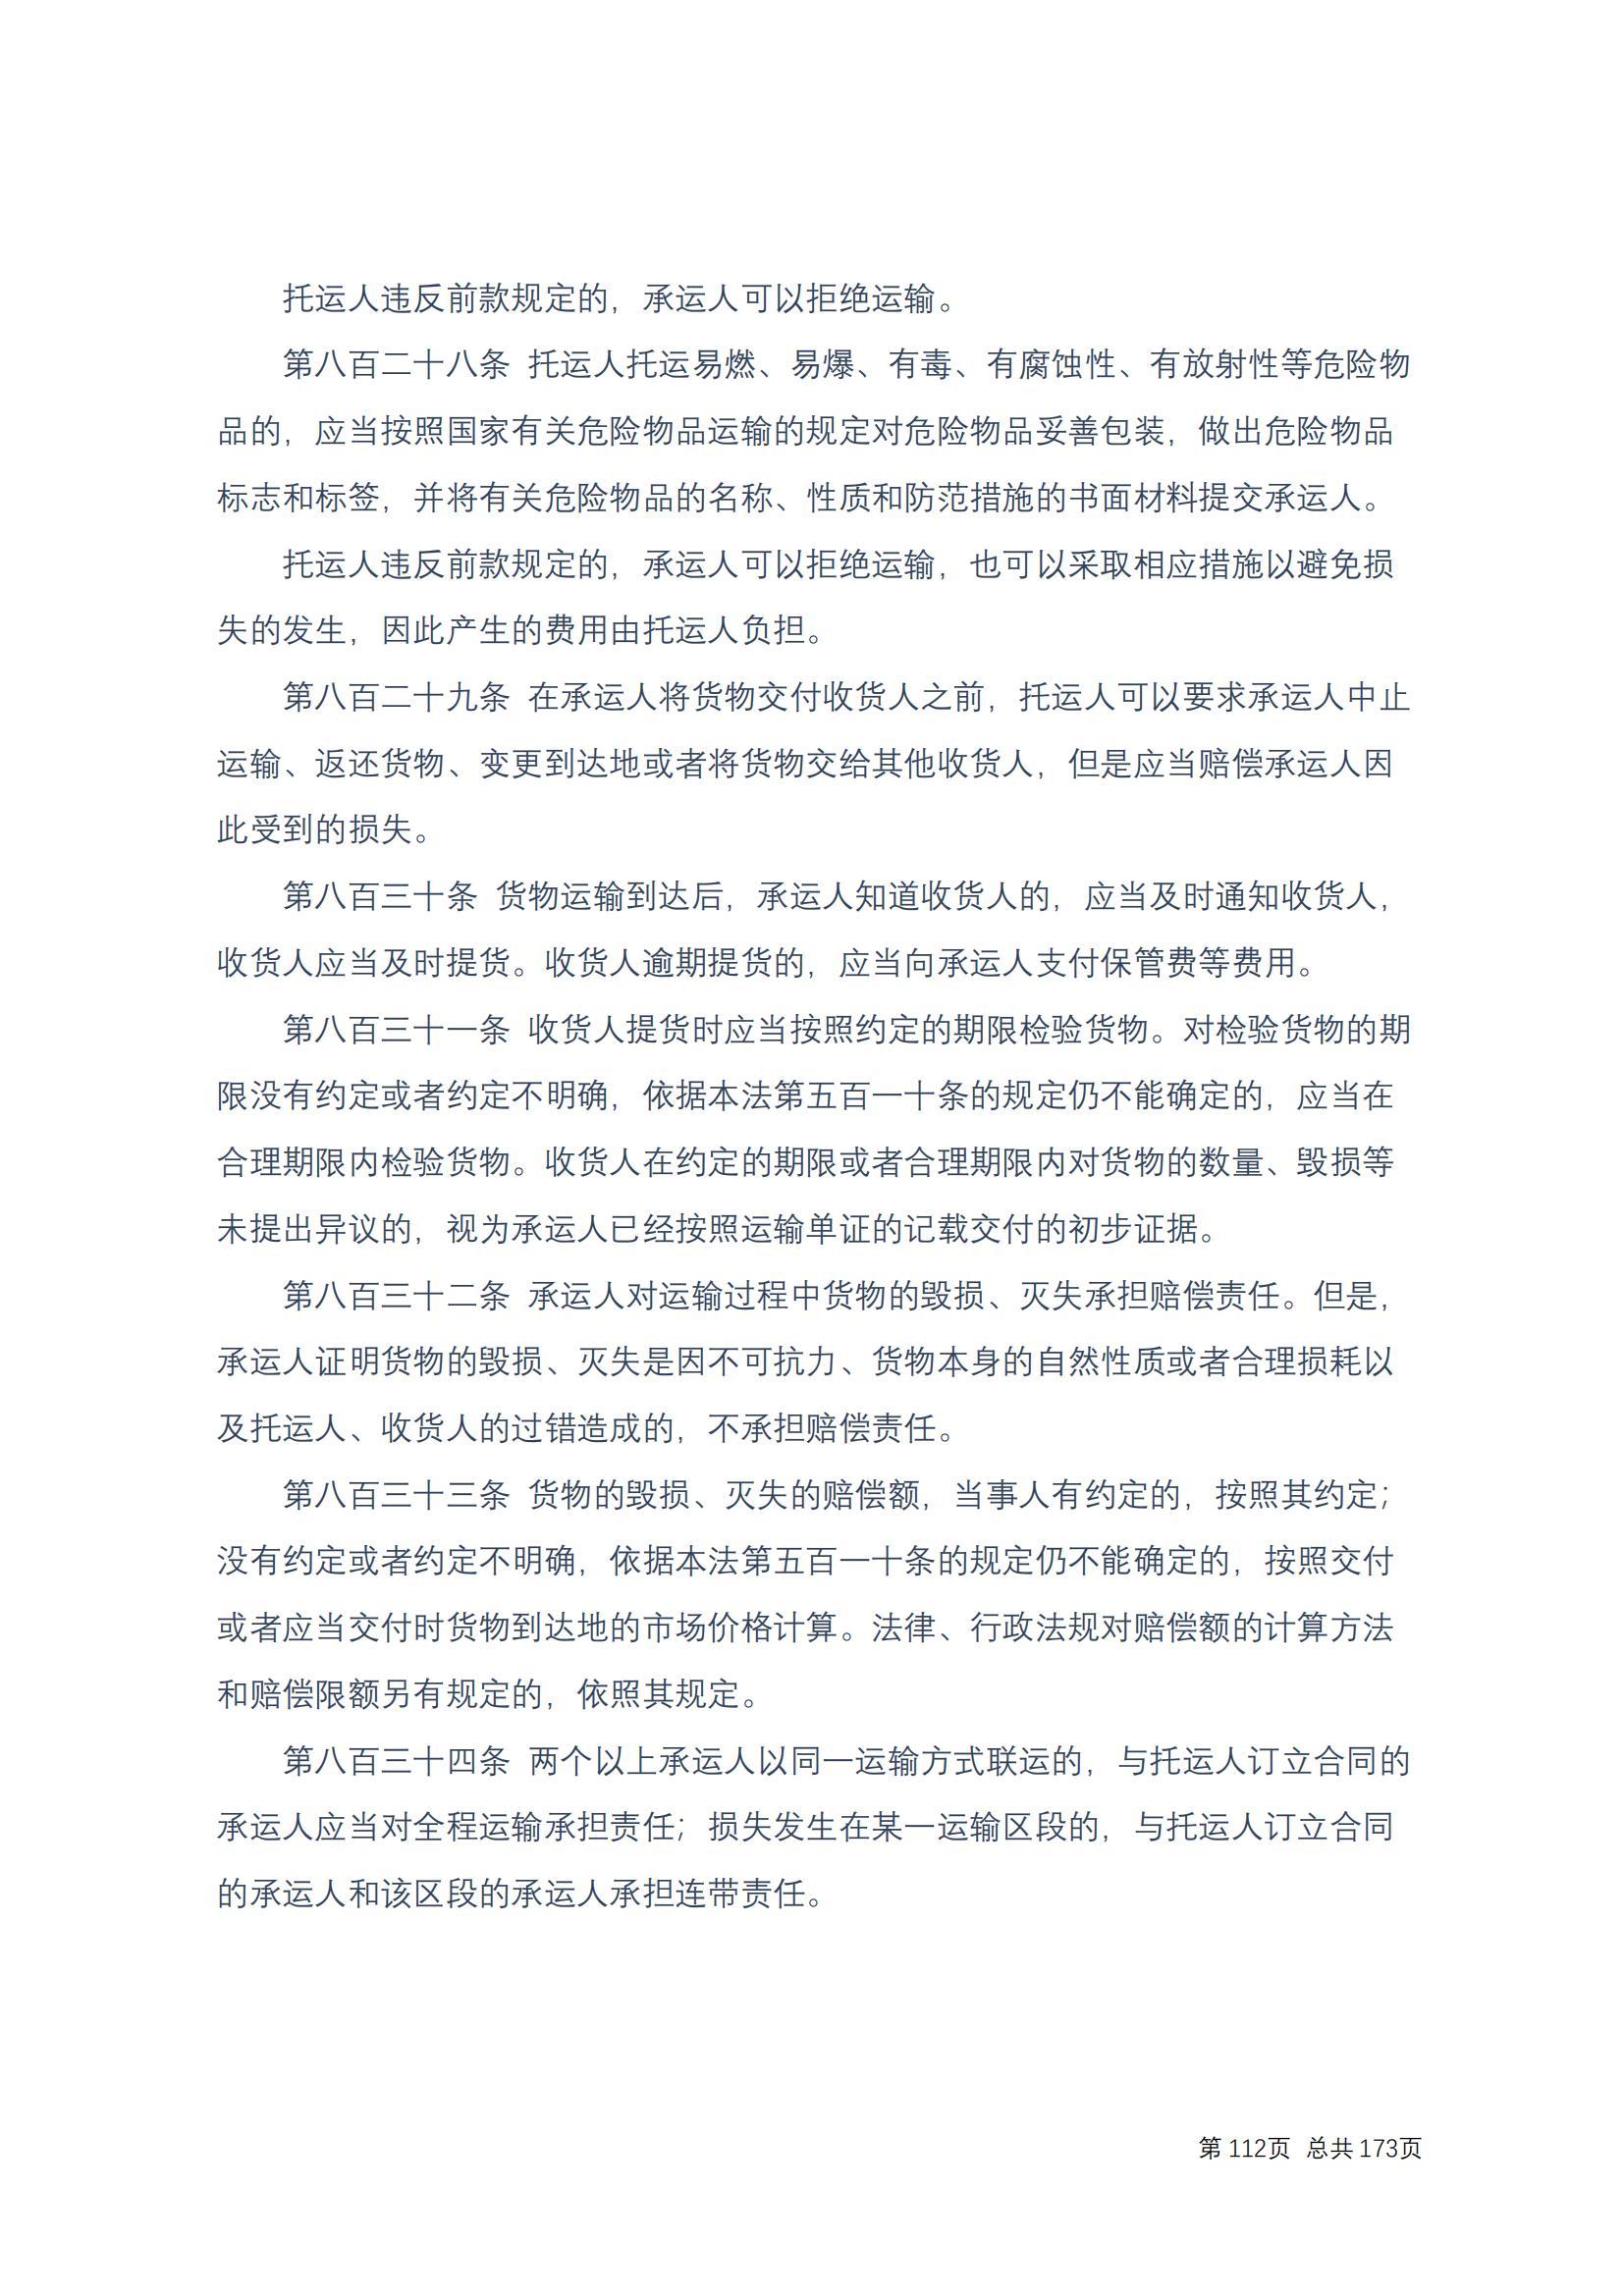 中华人民共和国民法典 修改过_111